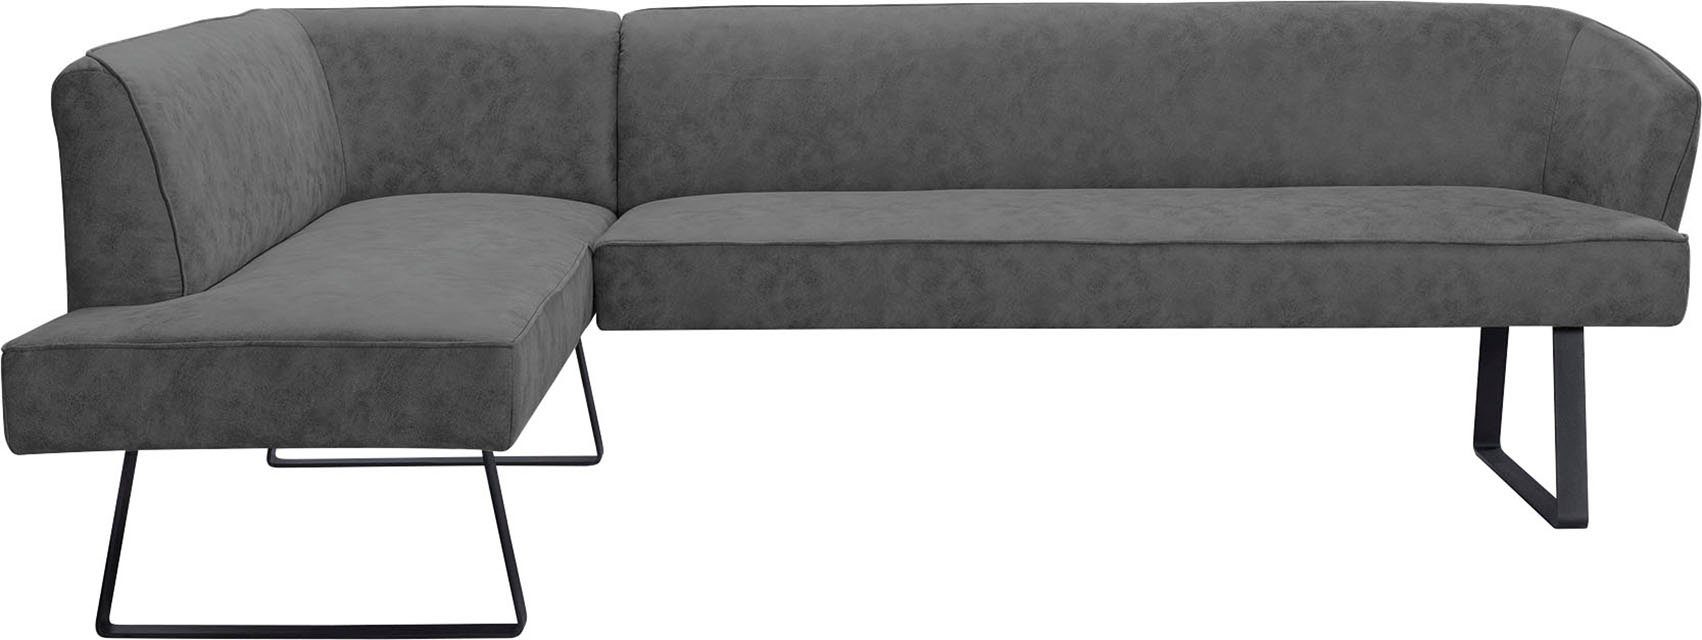 Bezug in sofa Keder verschiedenen fashion mit Qualitäten Metallfüßen, exxpo Americano, Eckbank und -